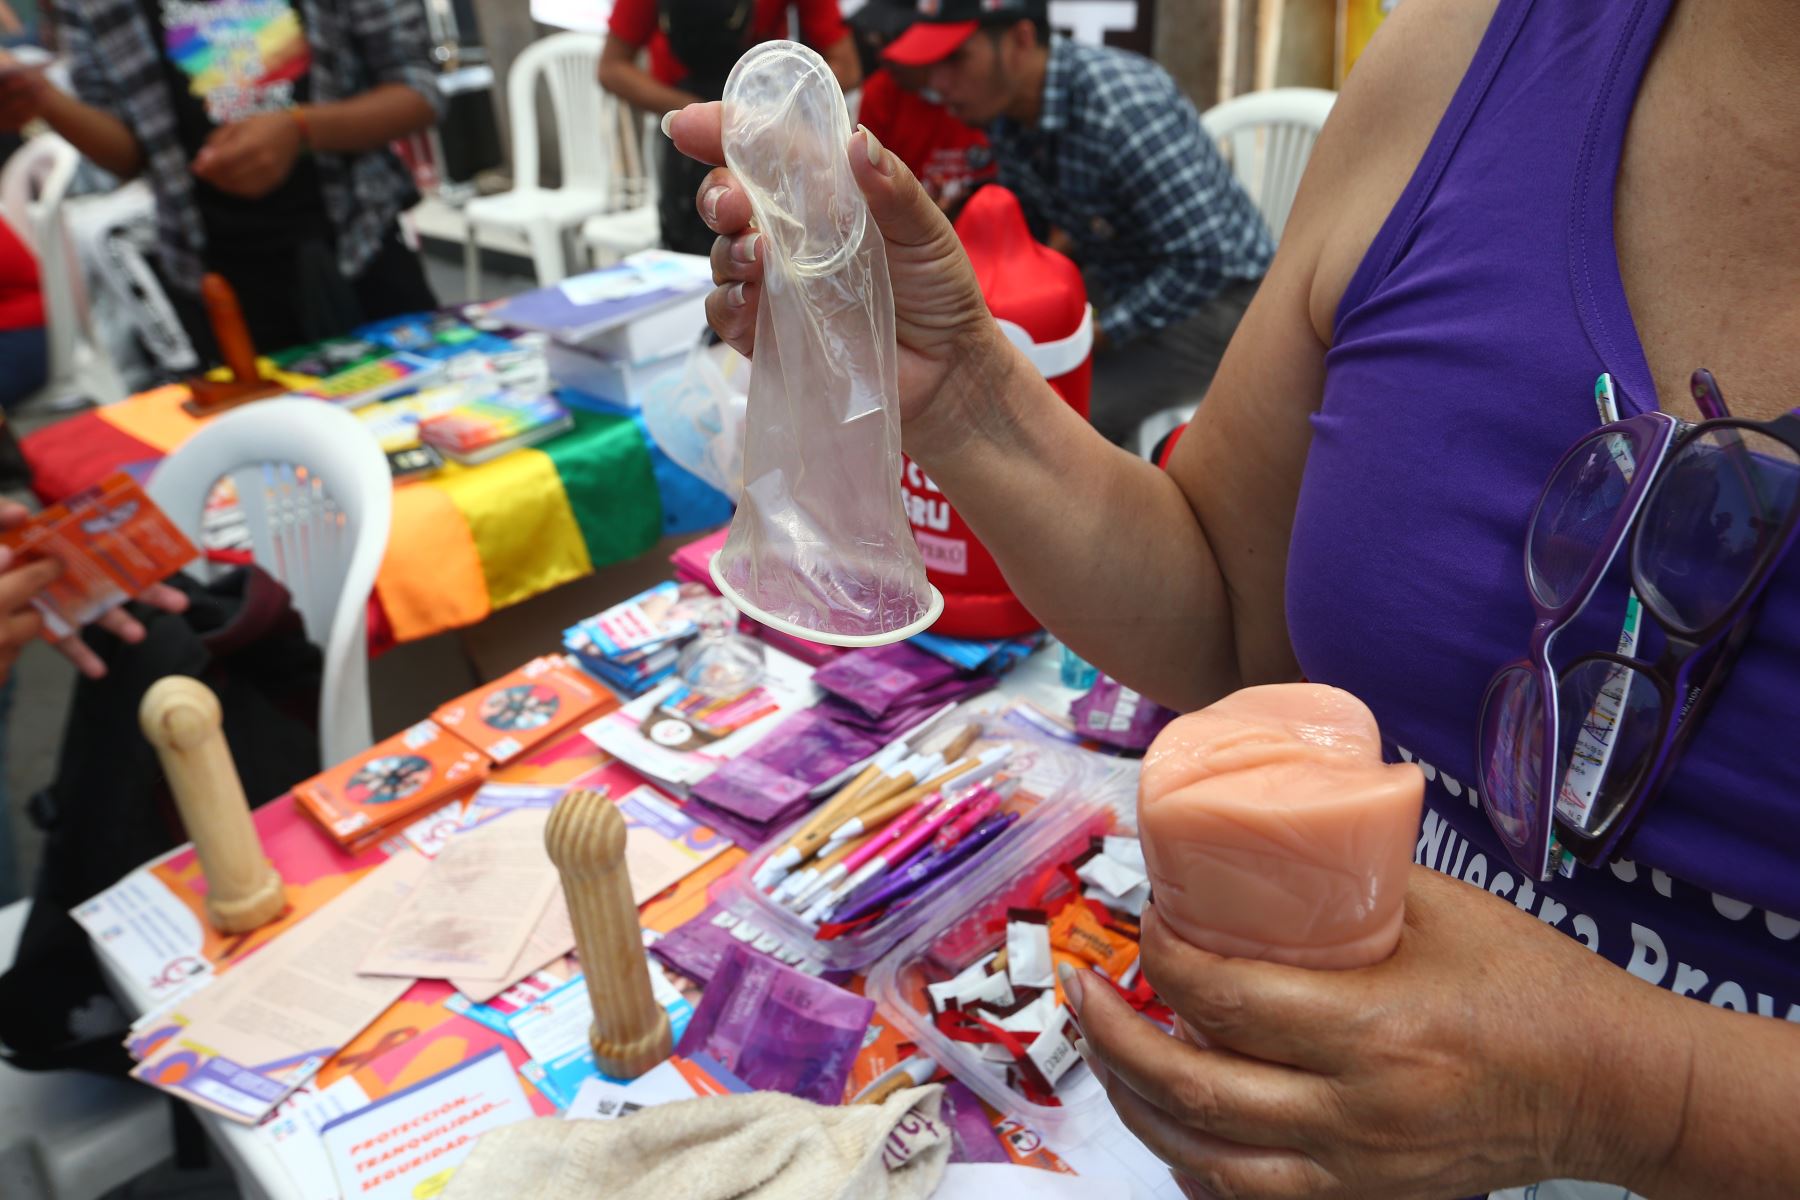 Feria informativa para prevenir el VIH/Sida se realiza en Plaza San Martín. Foto: ANDINA/Héctor Vinces